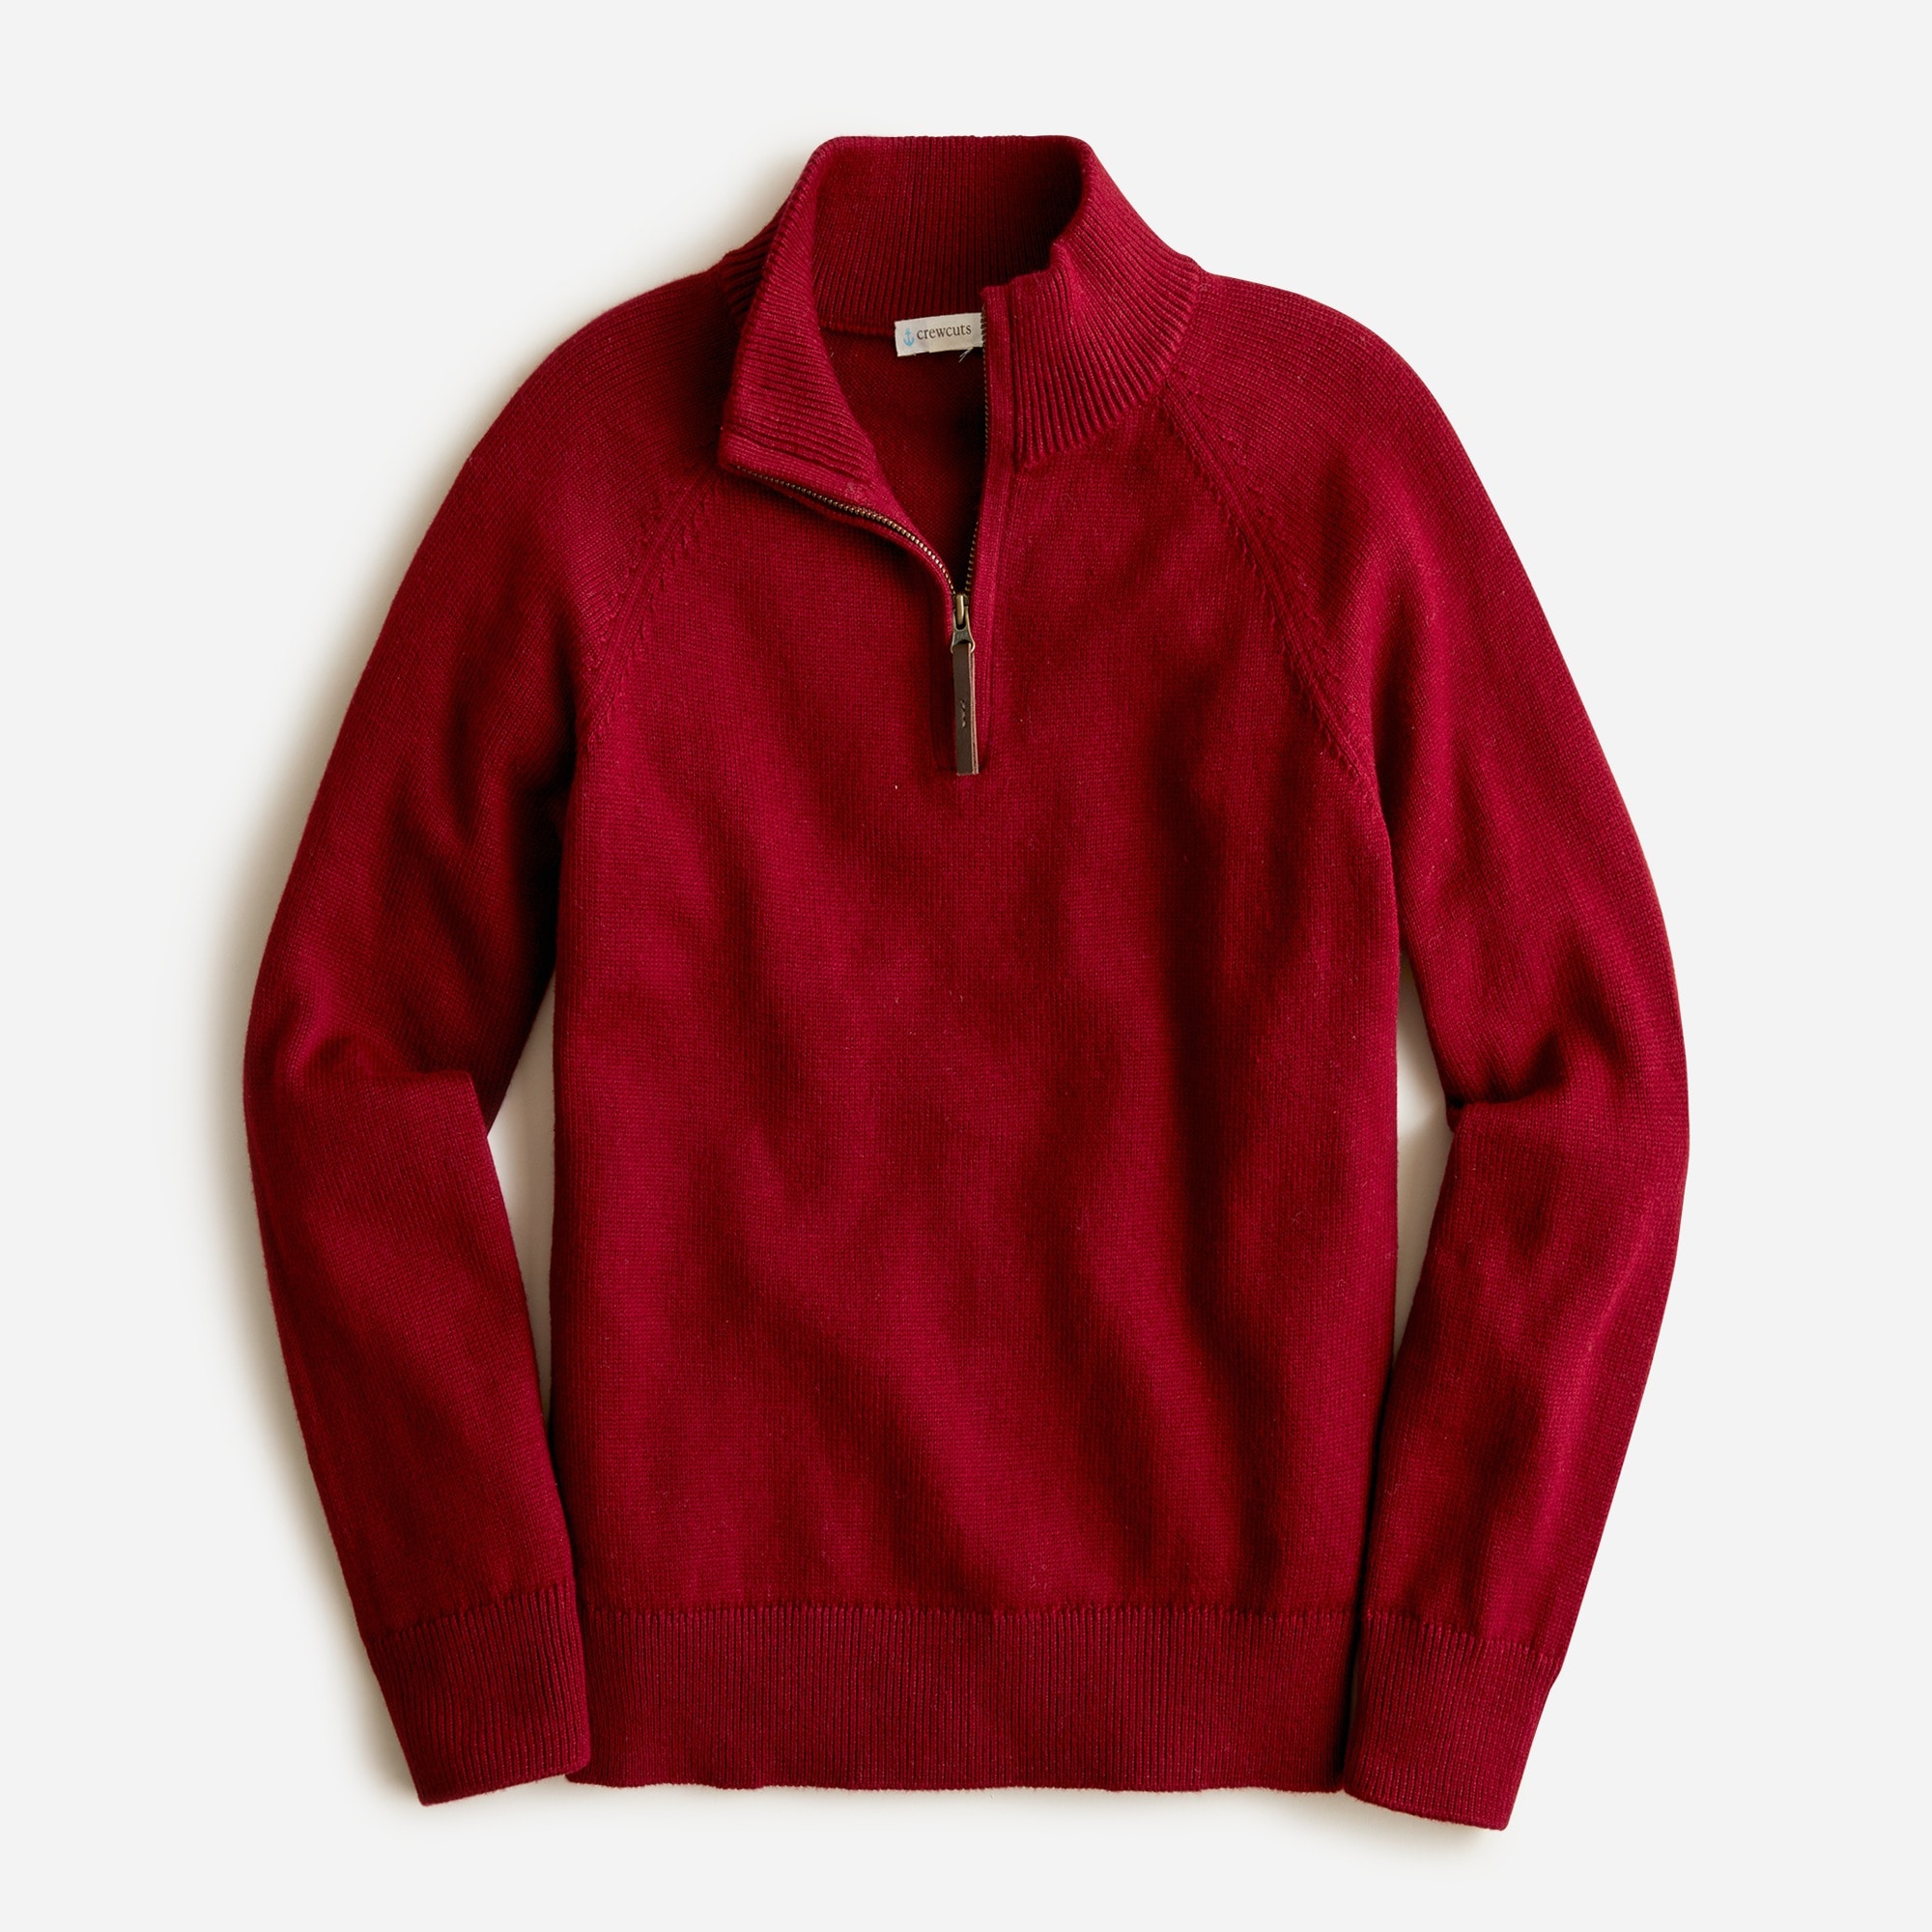 제이크루 보이즈 스웨터 J.crew Boys cotton-cashmere half-zip sweater,GARNET FLAME